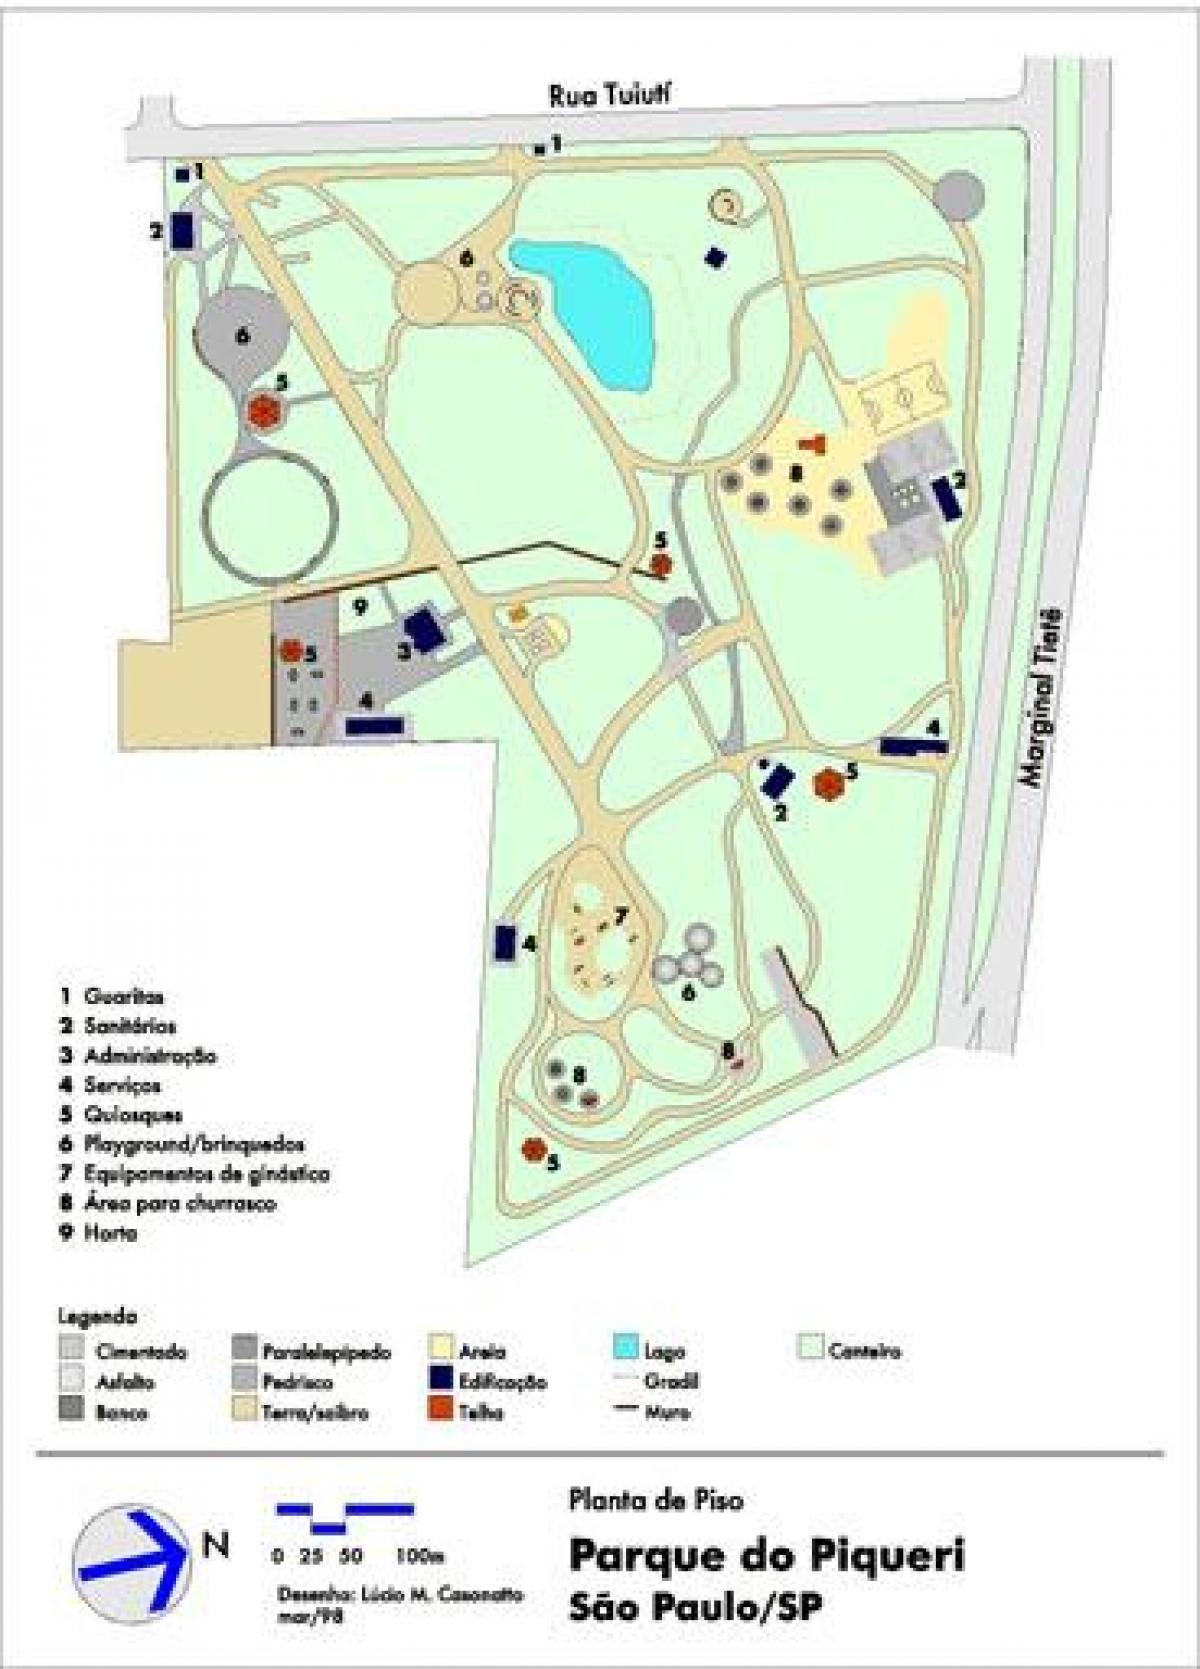 Peta dari Piqueri Sao Paulo Park